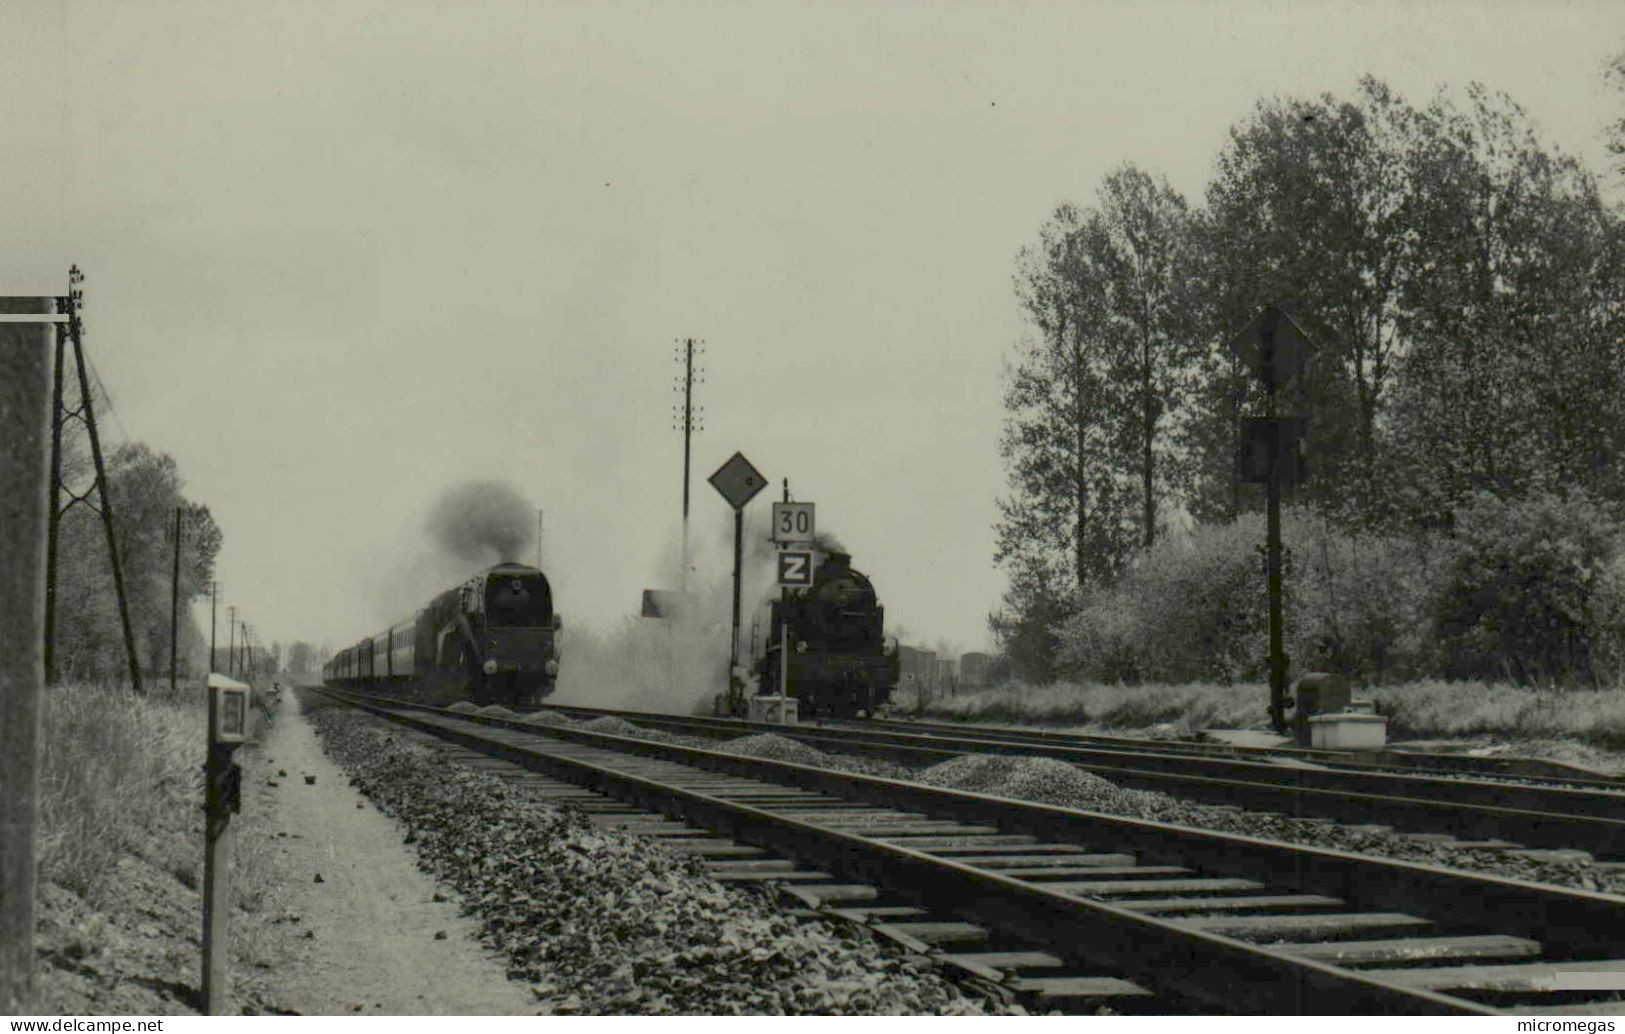 Longueil-Sainte-Marie - Rapide De Bruxelles 232 R 1 - Photo J. Gallet, 10-5-1953 - Trains